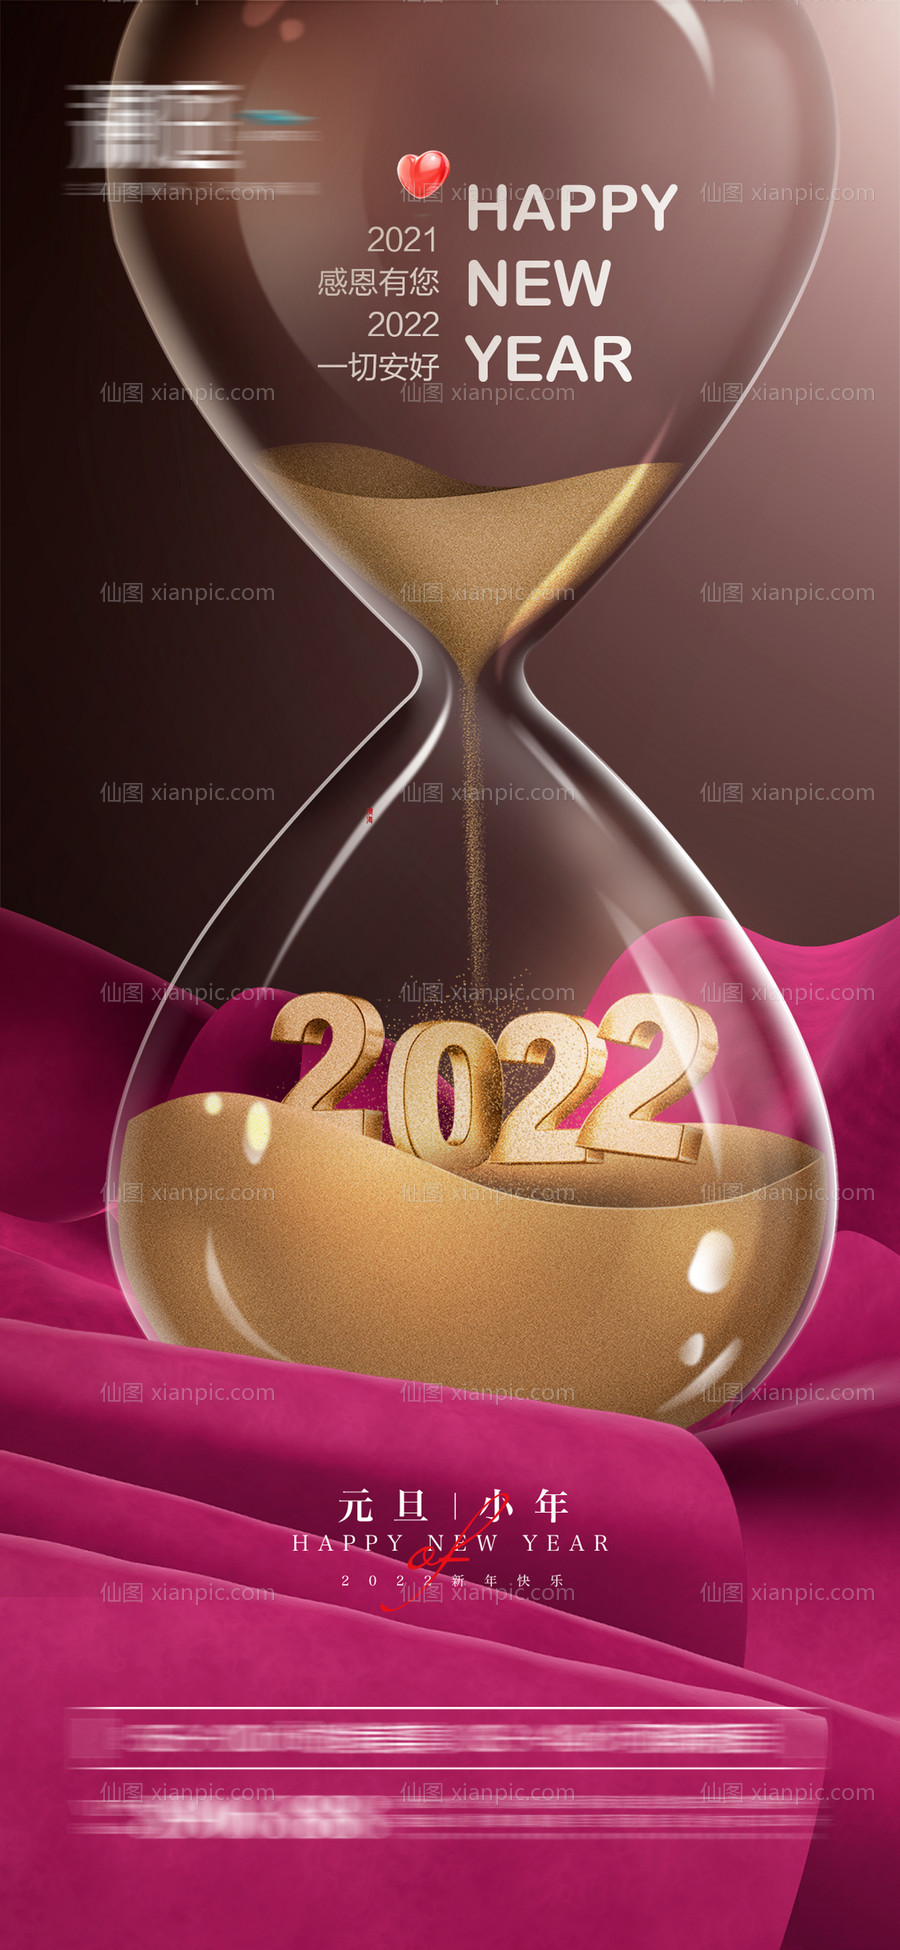 素材乐-2022元旦及小年新年节日海报